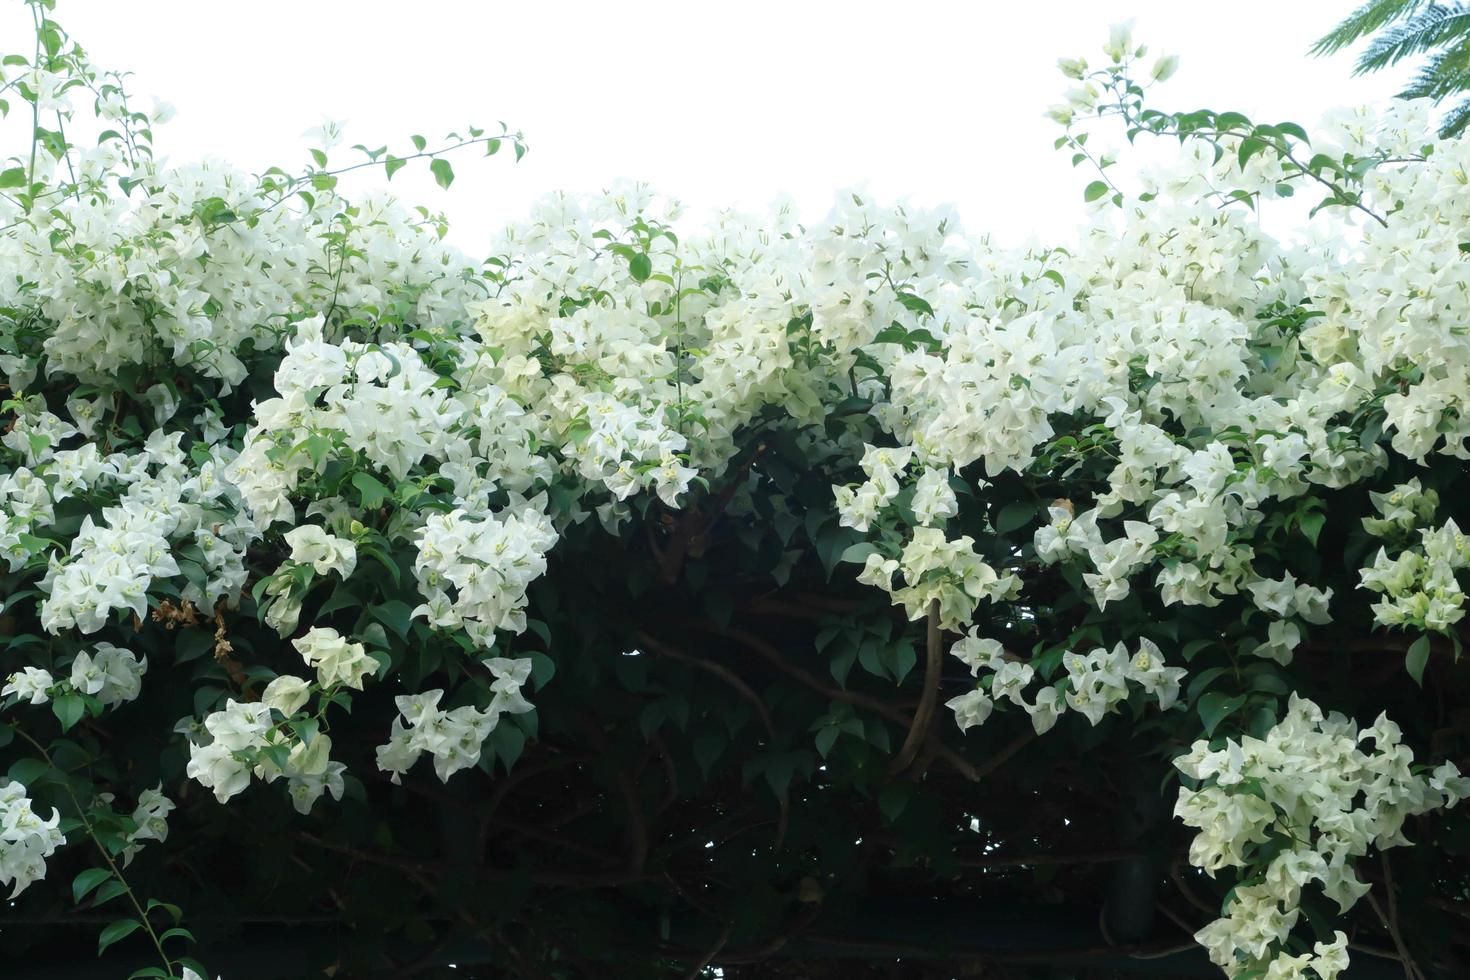 hermosa buganvilla blanca, flor de papel tropical que florece en el jardín de verano foto